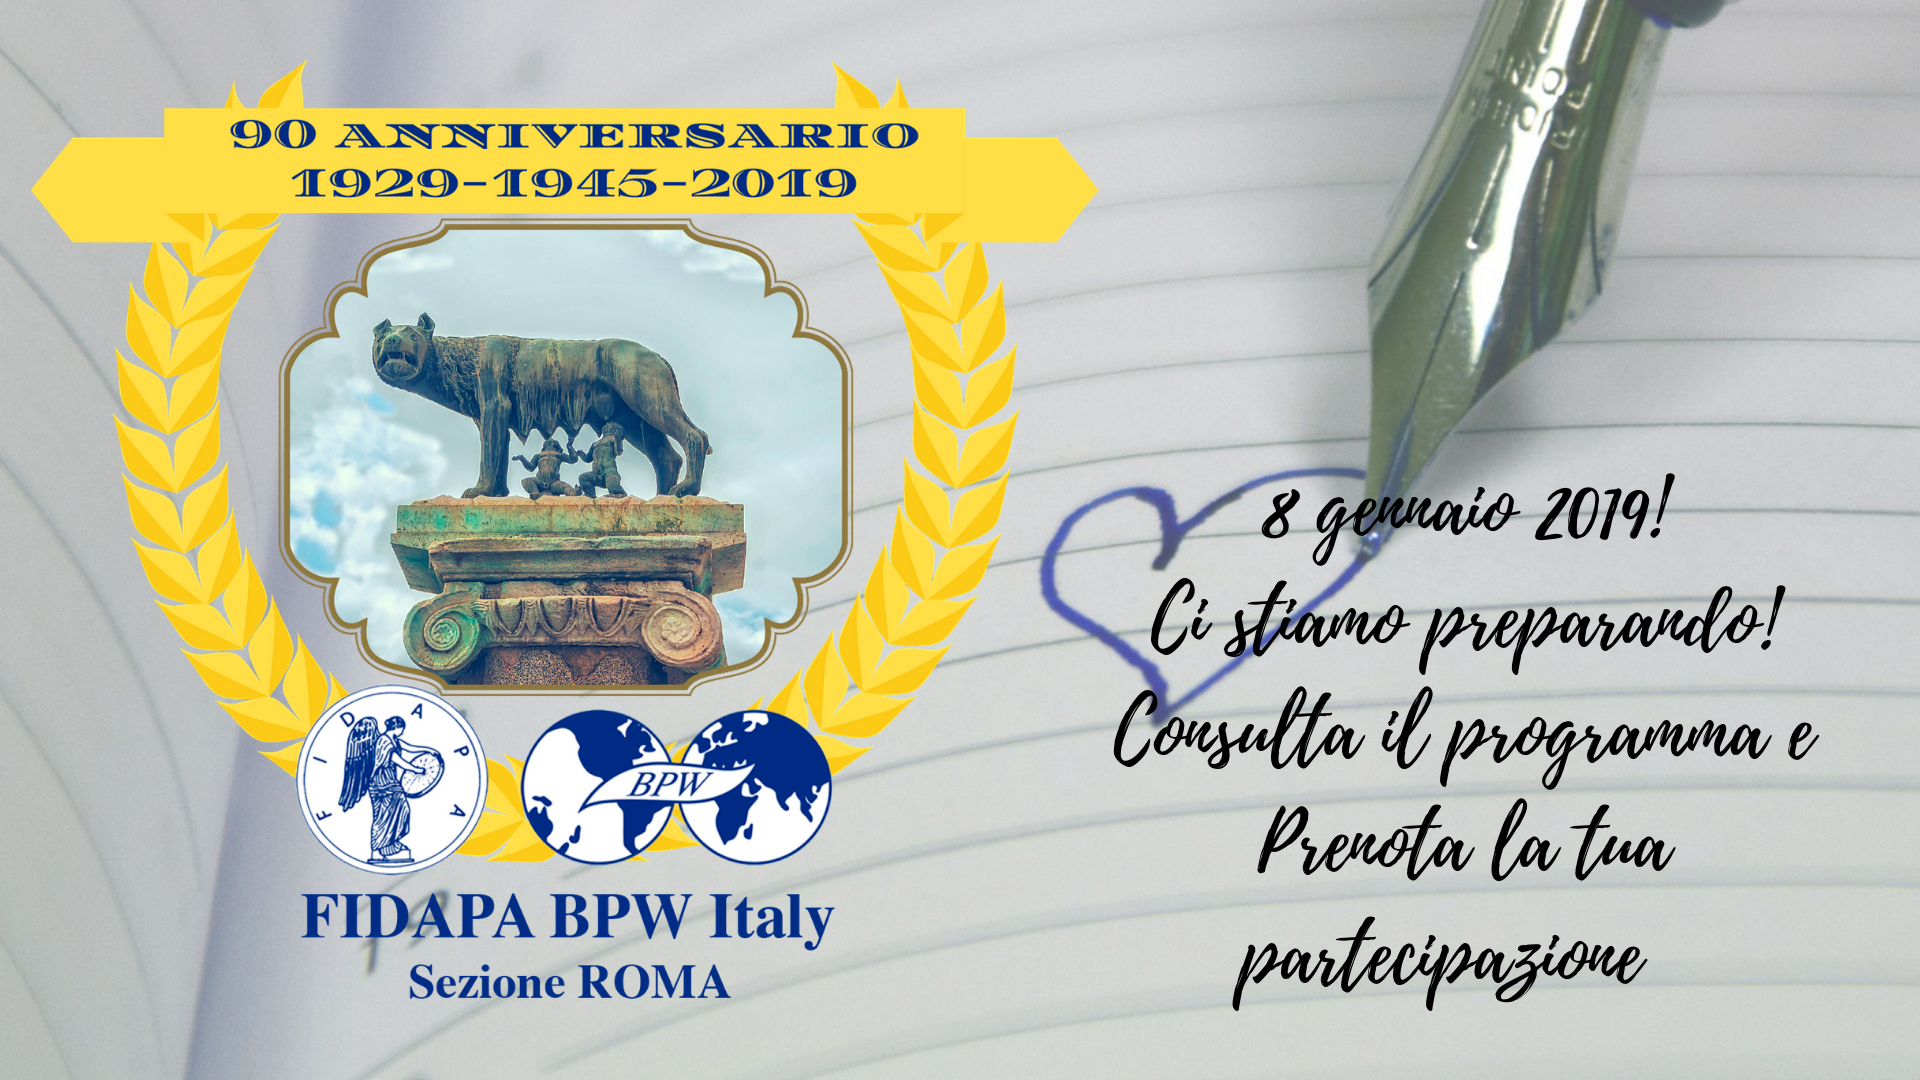 Sezione Roma FIDAPA BPW Italy celebra 90 anni dalla fondazione 8 gennaio 1929